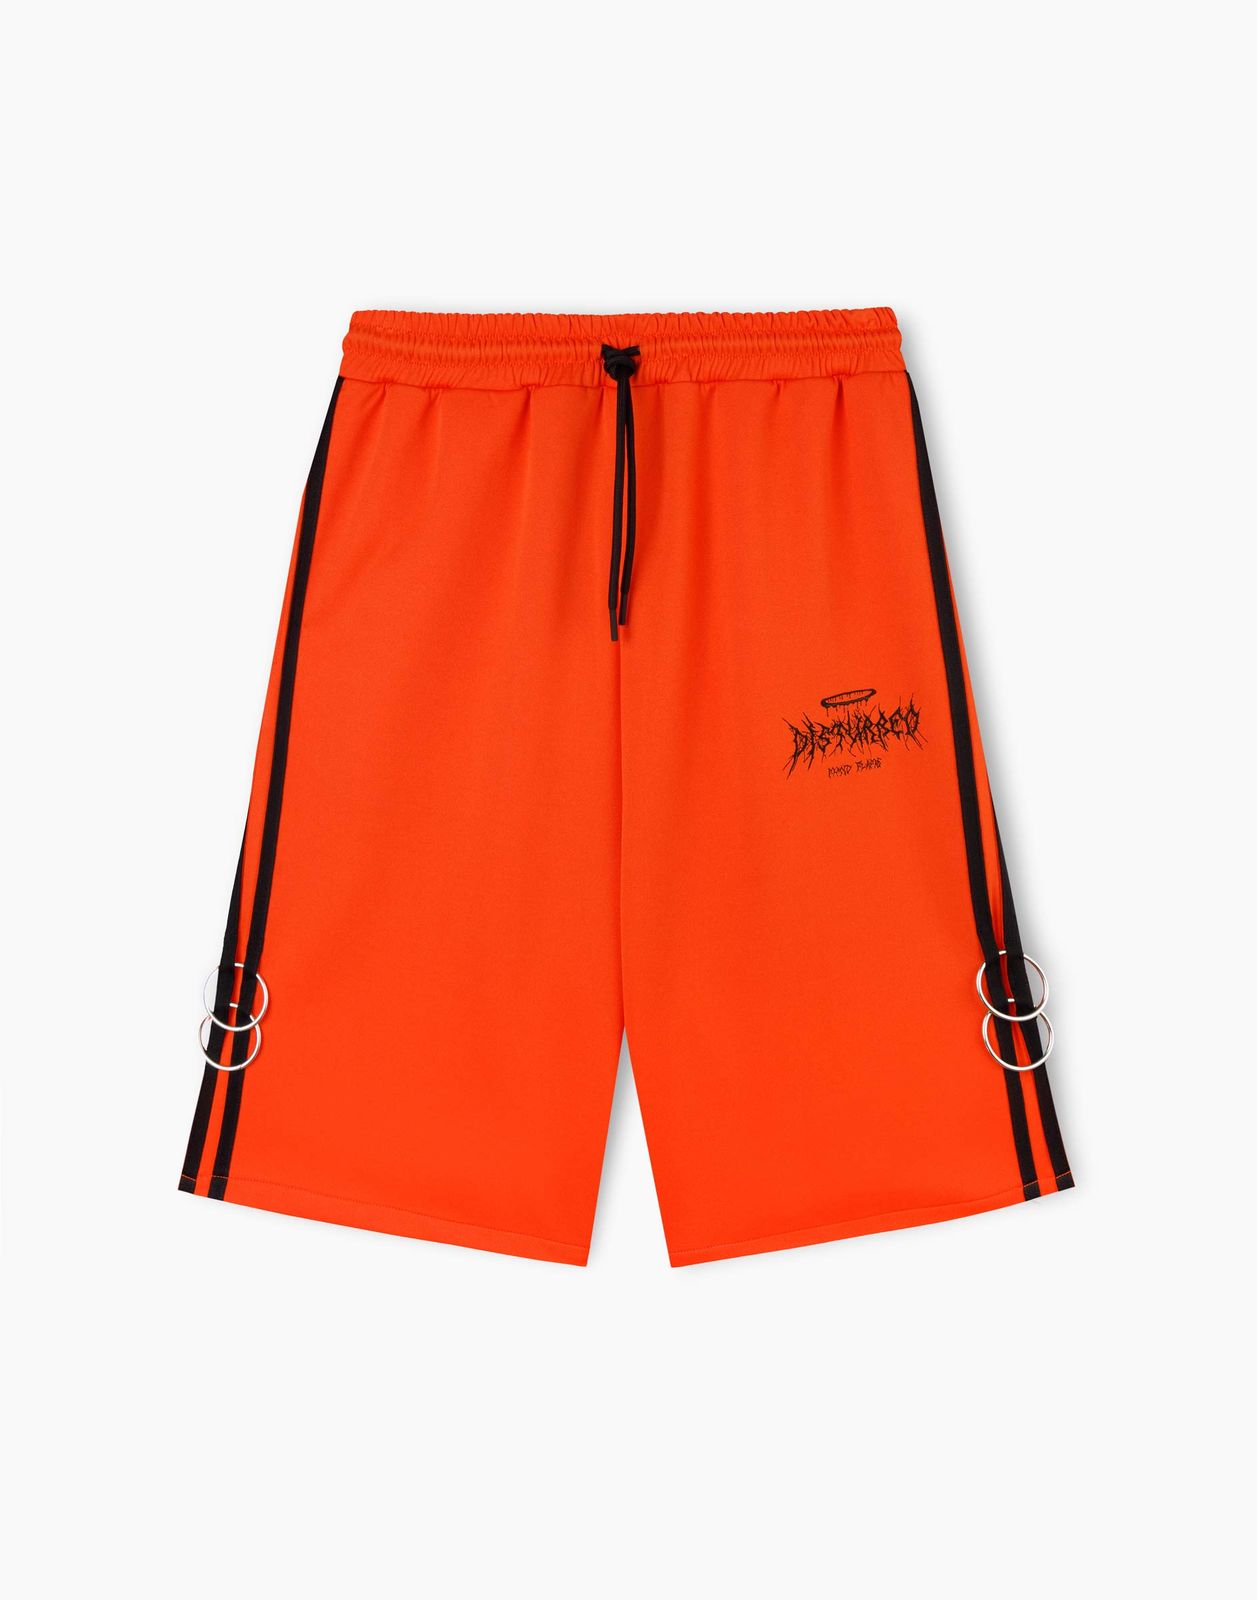 Спортивные шорты для мальчика Gloria Jeans BSH007589 оранжевый 12-14л/164 бейсболка для мальчика minaku оранжевый зеленый р р 52 см